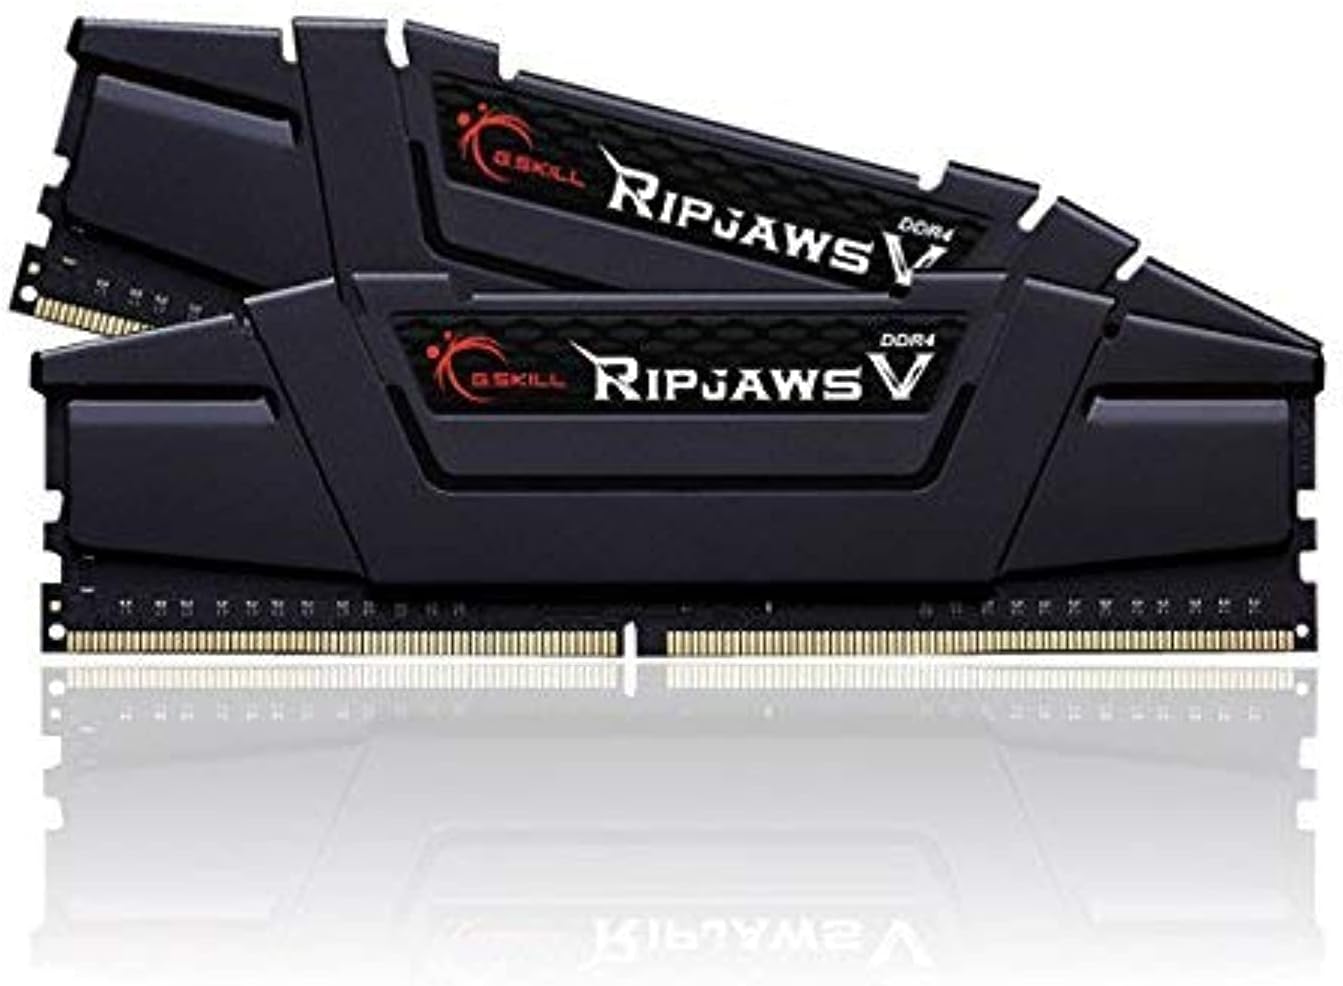 G.SKILL Ripjaws V Series (Intel XMP) DDR4 RAM 16GB (2x8GB) 3600MT/s CL18-22-22-42 1.35V Desktop Computer Memory UDIMM - Black (F4-3600C18D-16GVK)